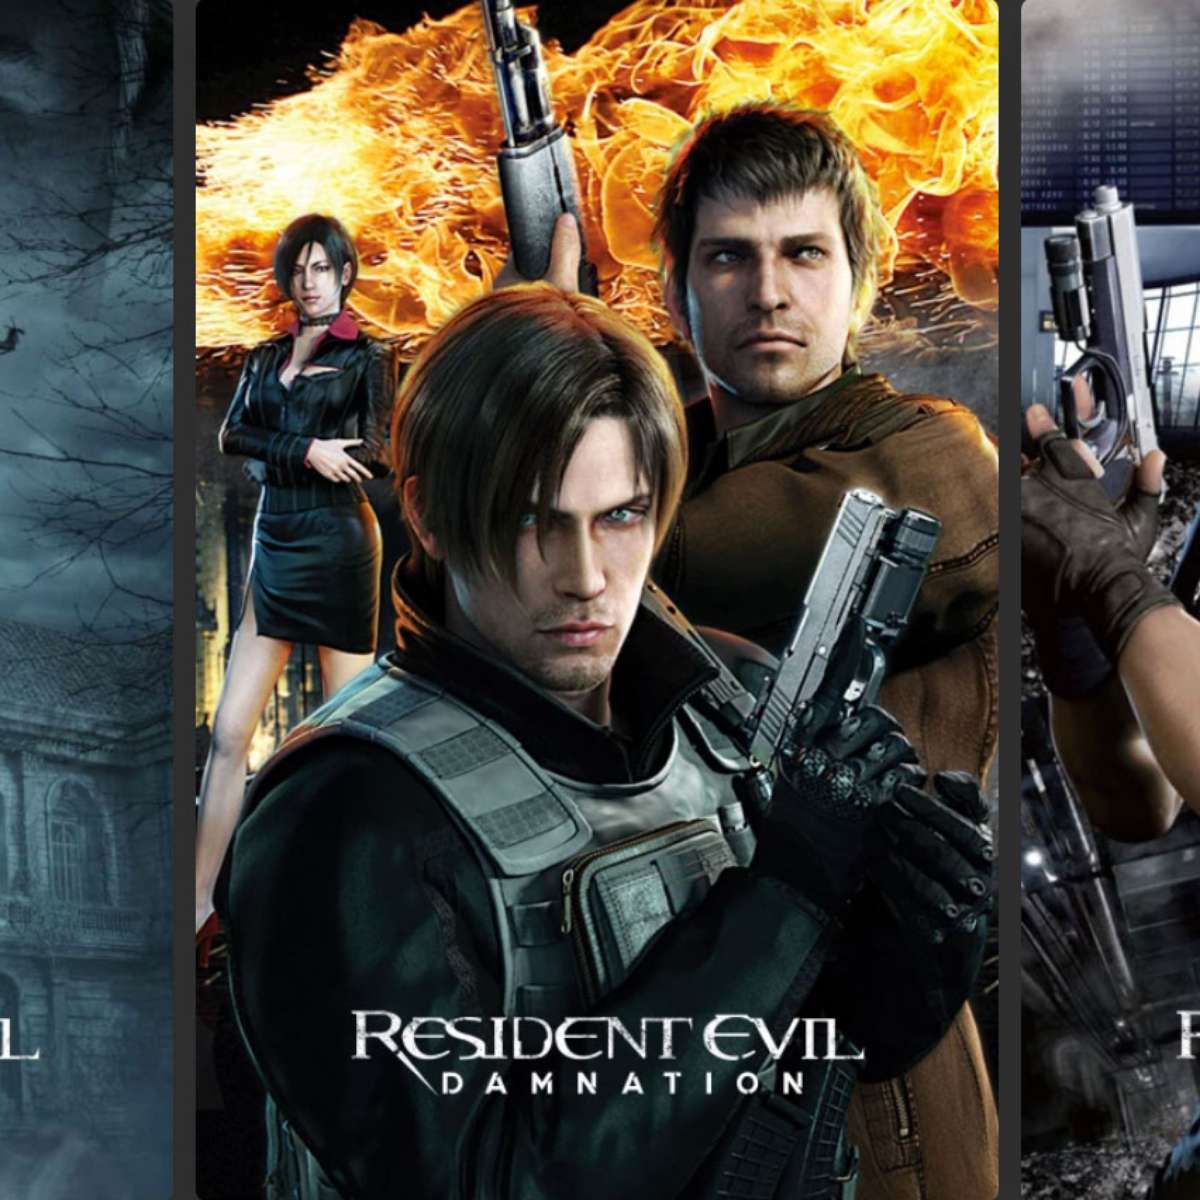 Categoria:Filmes, Resident Evil